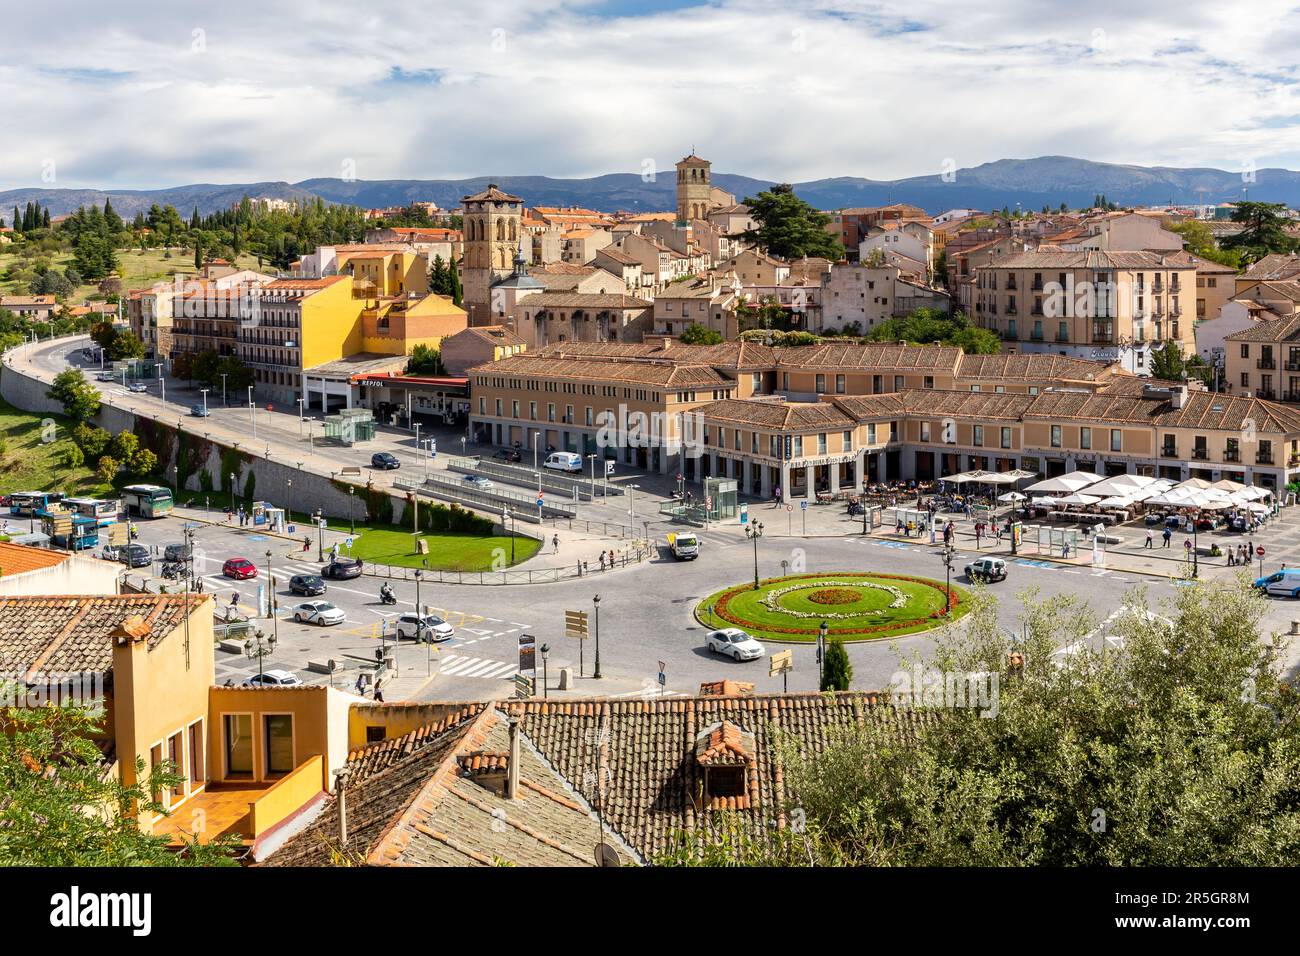 Ségovie, Espagne, 03.10.21. Segovia paysage urbain avec route, rond-point vert, voitures passant et rues étroites en pierre, architecture médiévale. Banque D'Images